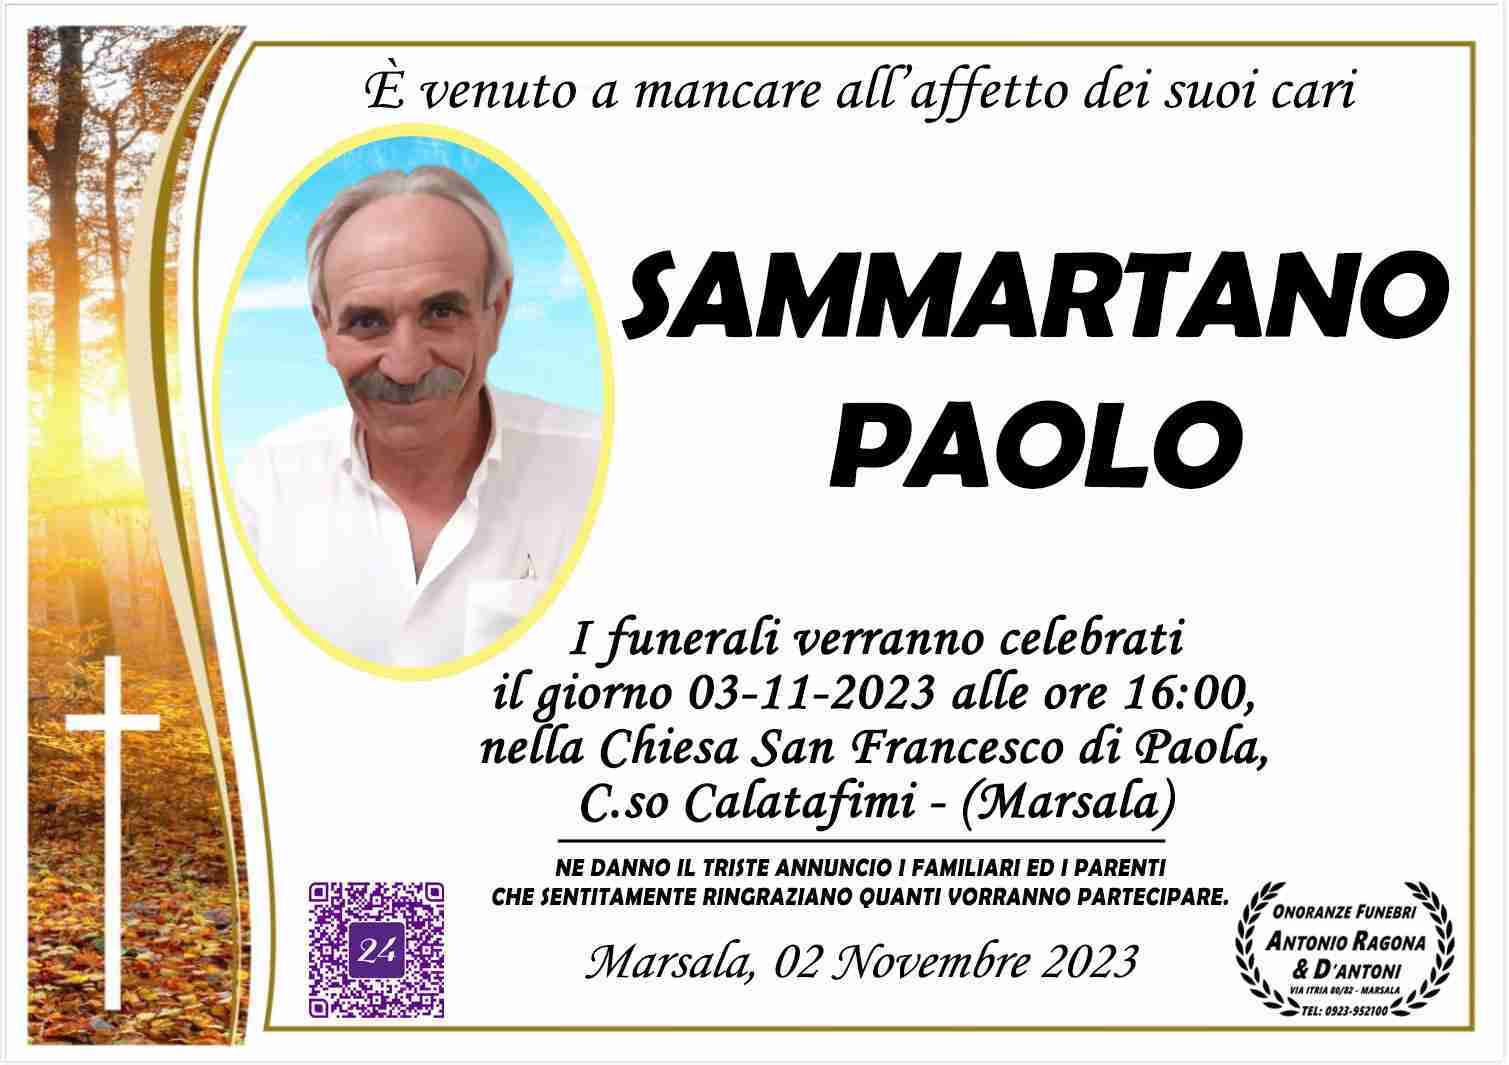 Paolo Sammartano